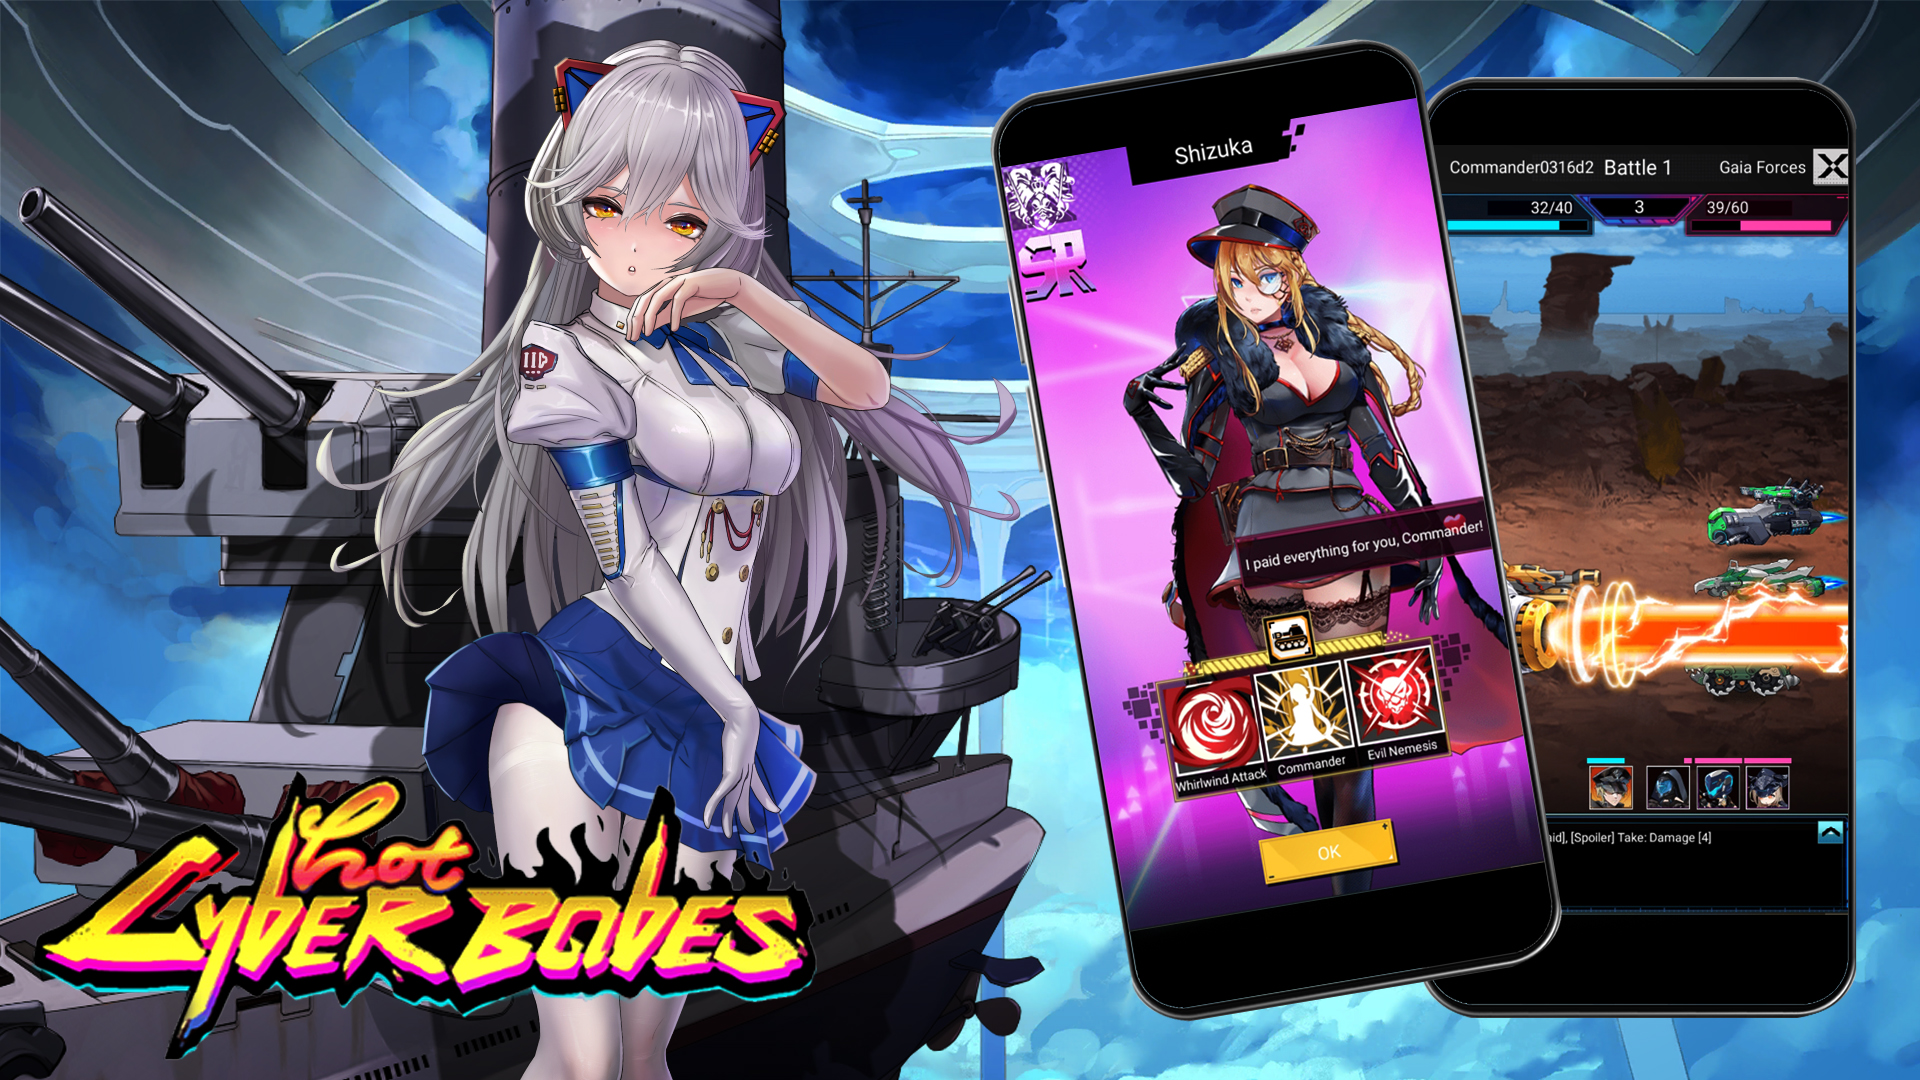 Babes Hentai - Hot Cyber Babes - Hentai & Porn Games - XNXX Games